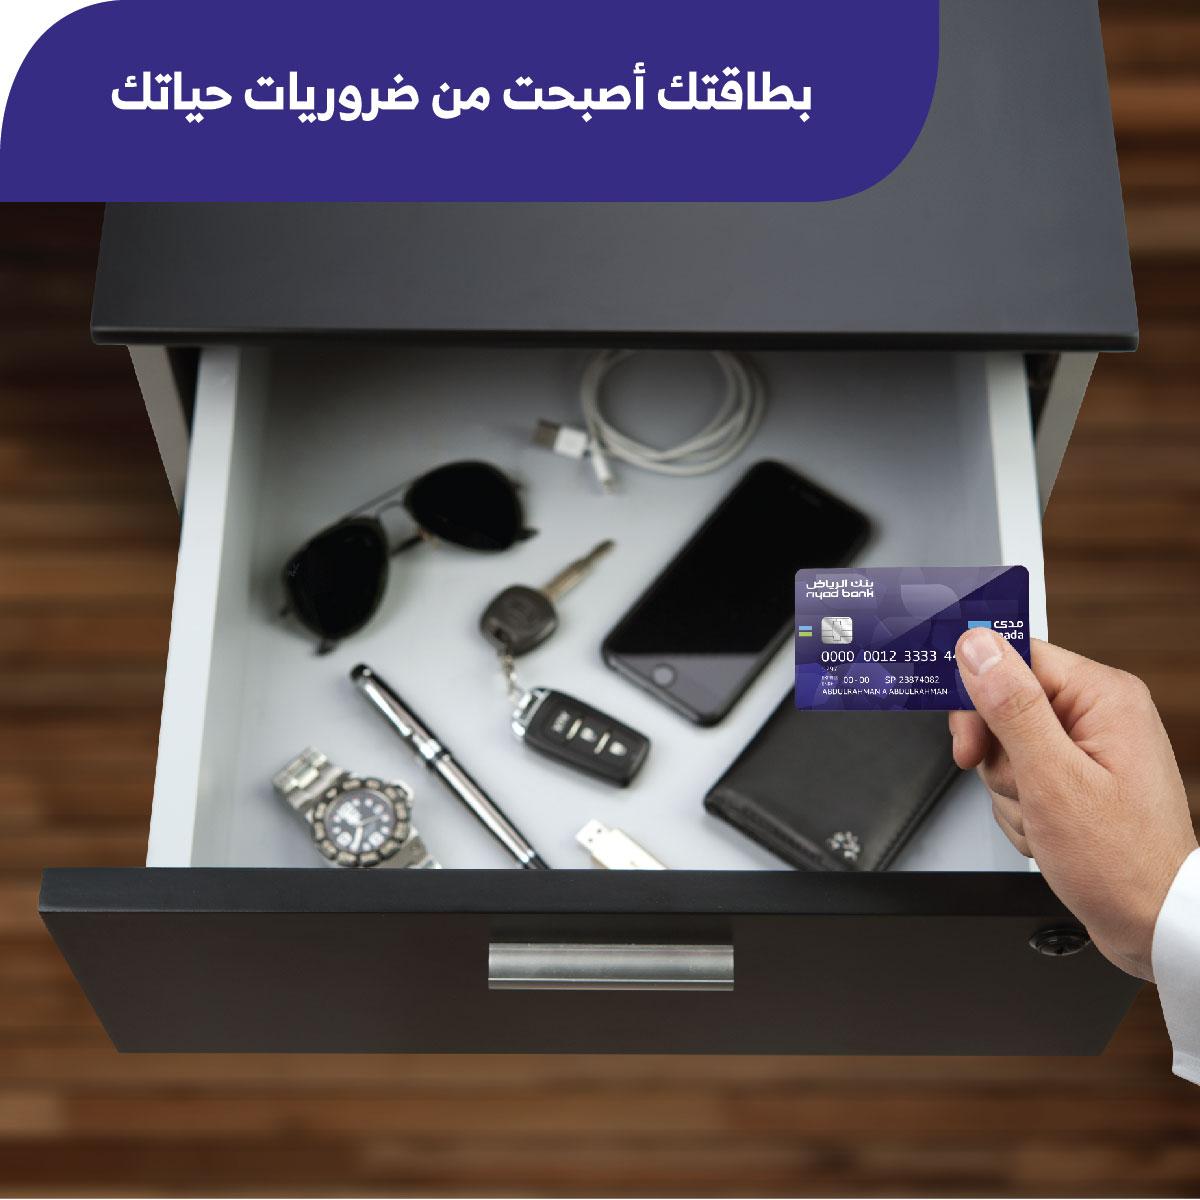 تجديد بطاقة الصراف بنك الرياض